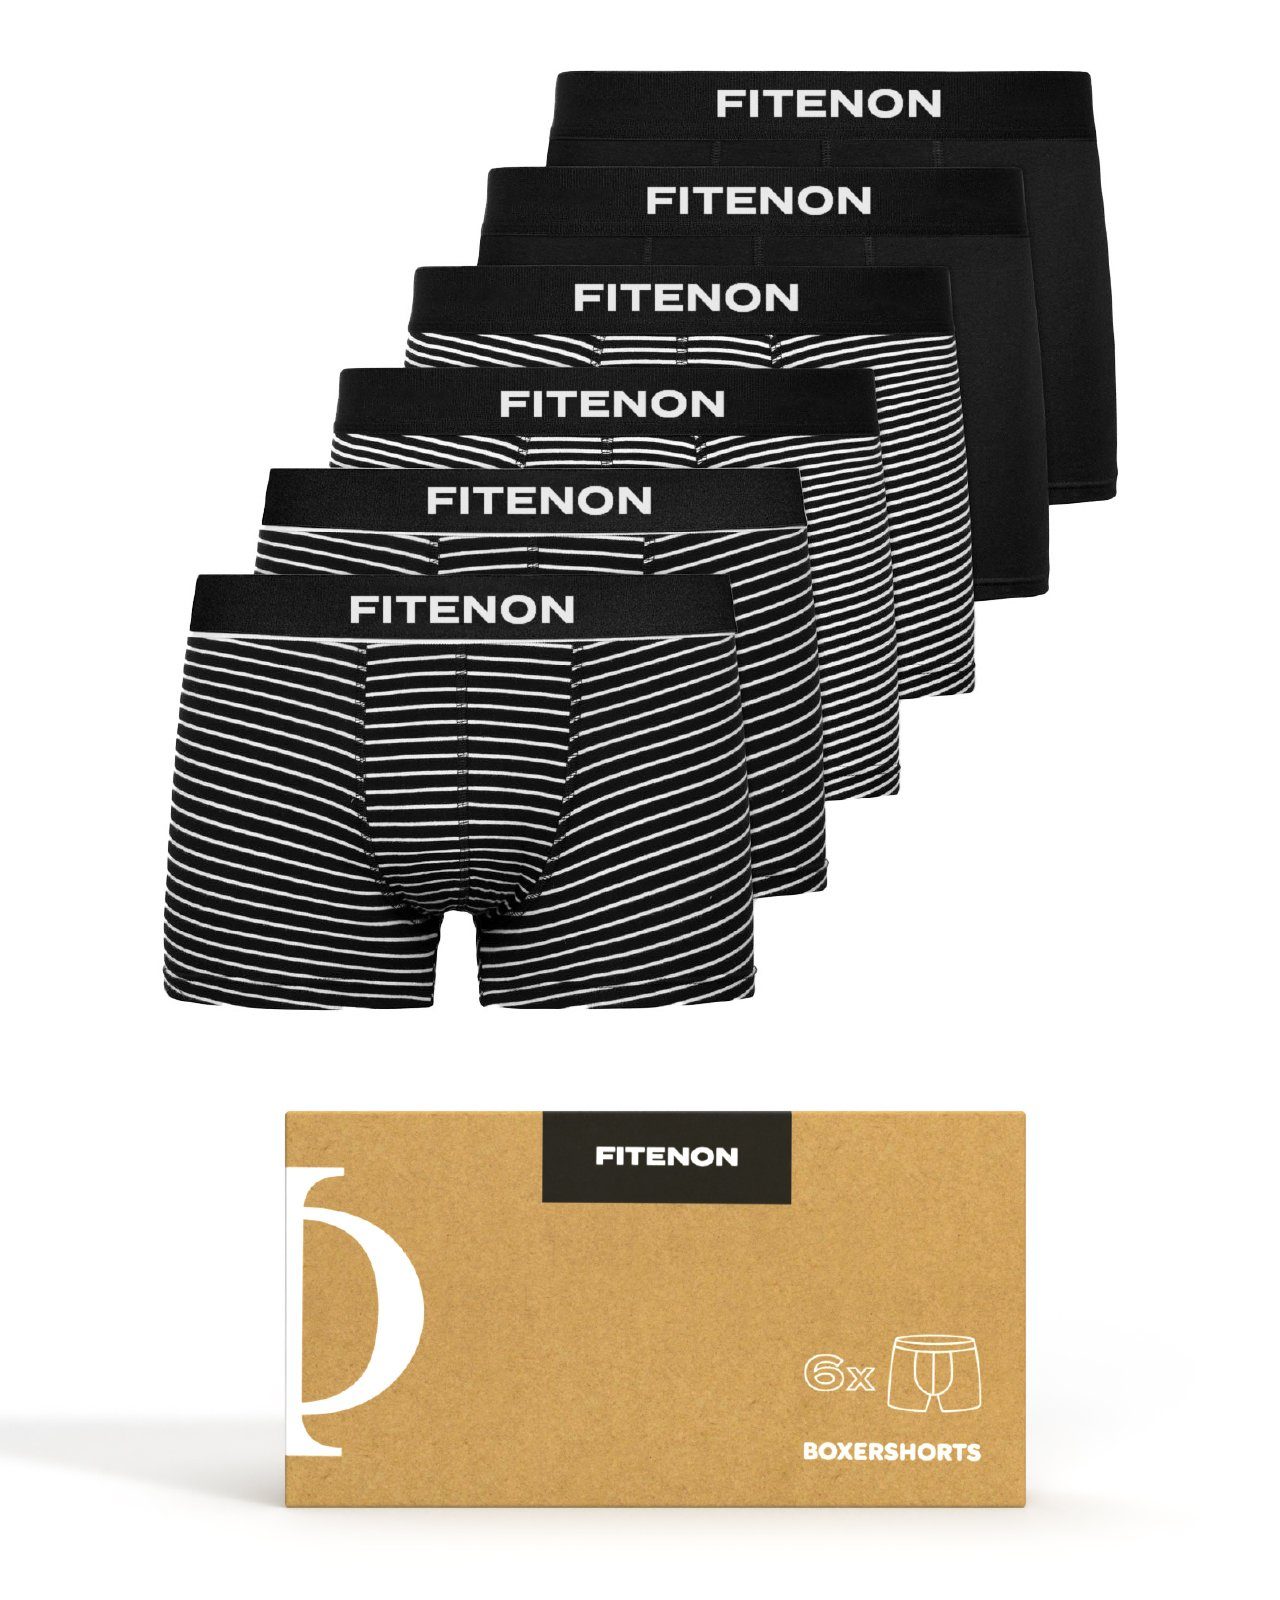 FITENON Boxershorts Herren Unterhosen, Unterwäsche, ohne kratzenden Zettel, Baumwolle (6 er Set) mit Logo-Elastikbund 4x Schwarz gestreift 2x Schwarz